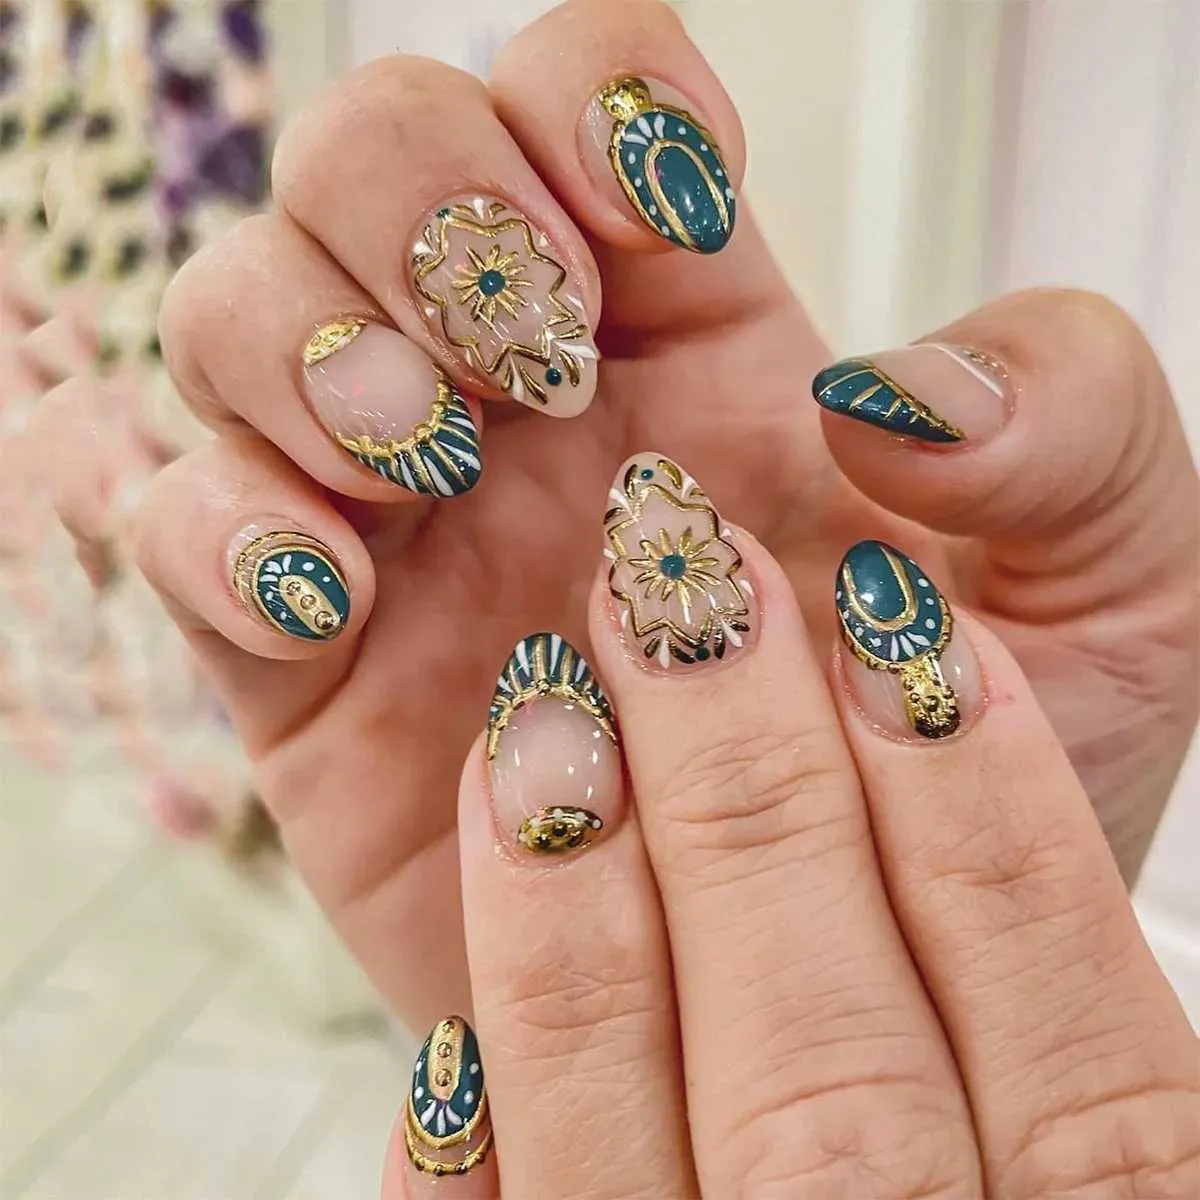 Faux ongles chinois rond faux nail patch flower motif de fleurs appuyez sur des ongles couverture complète ongles artificiels pour femmes patchs manucure de fille T240507